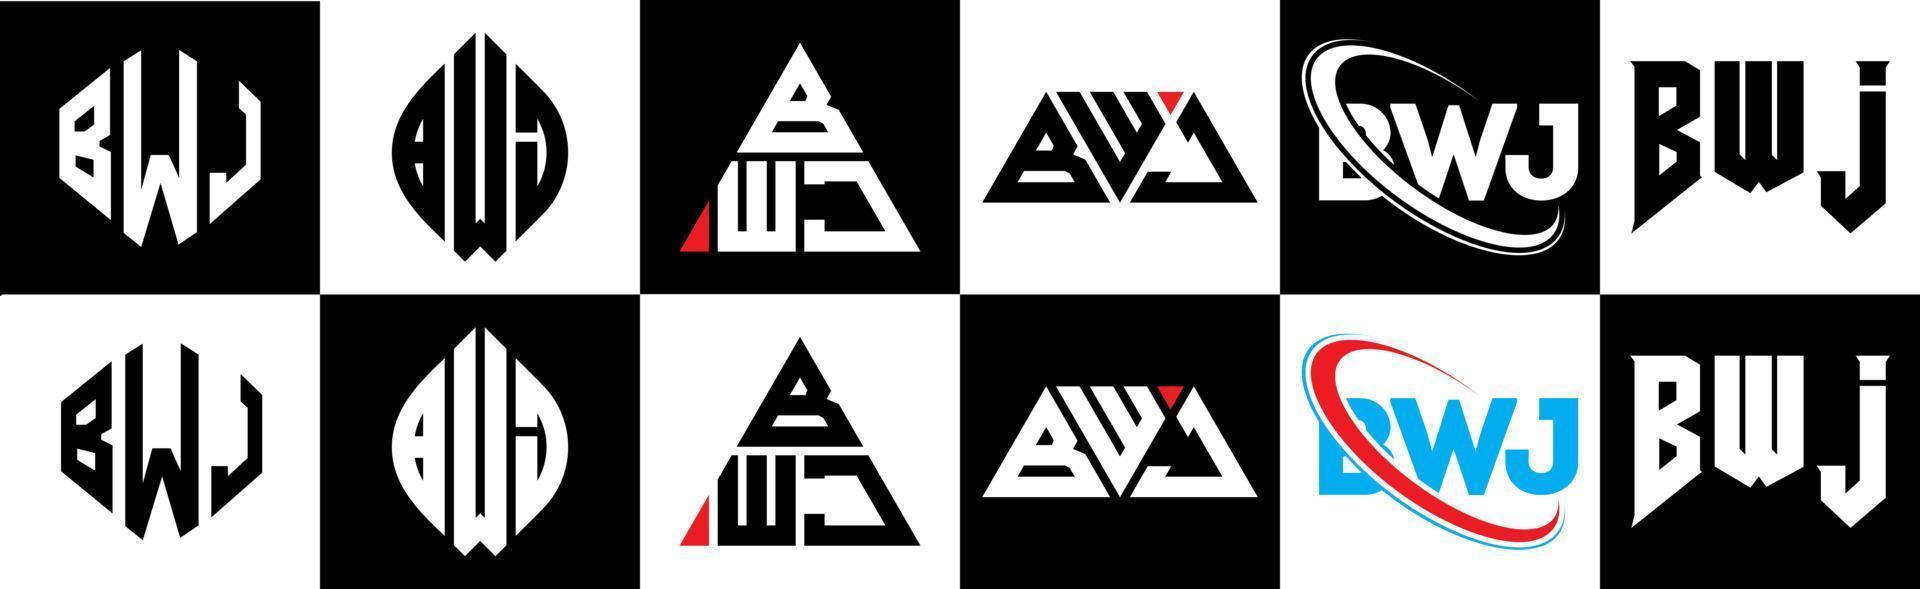 design de logotipo de letra bwj em estilo seis. polígono bwj, círculo, triângulo, hexágono, estilo plano e simples com logotipo de carta de variação de cor preto e branco definido em uma prancheta. bwj logotipo minimalista e clássico vetor